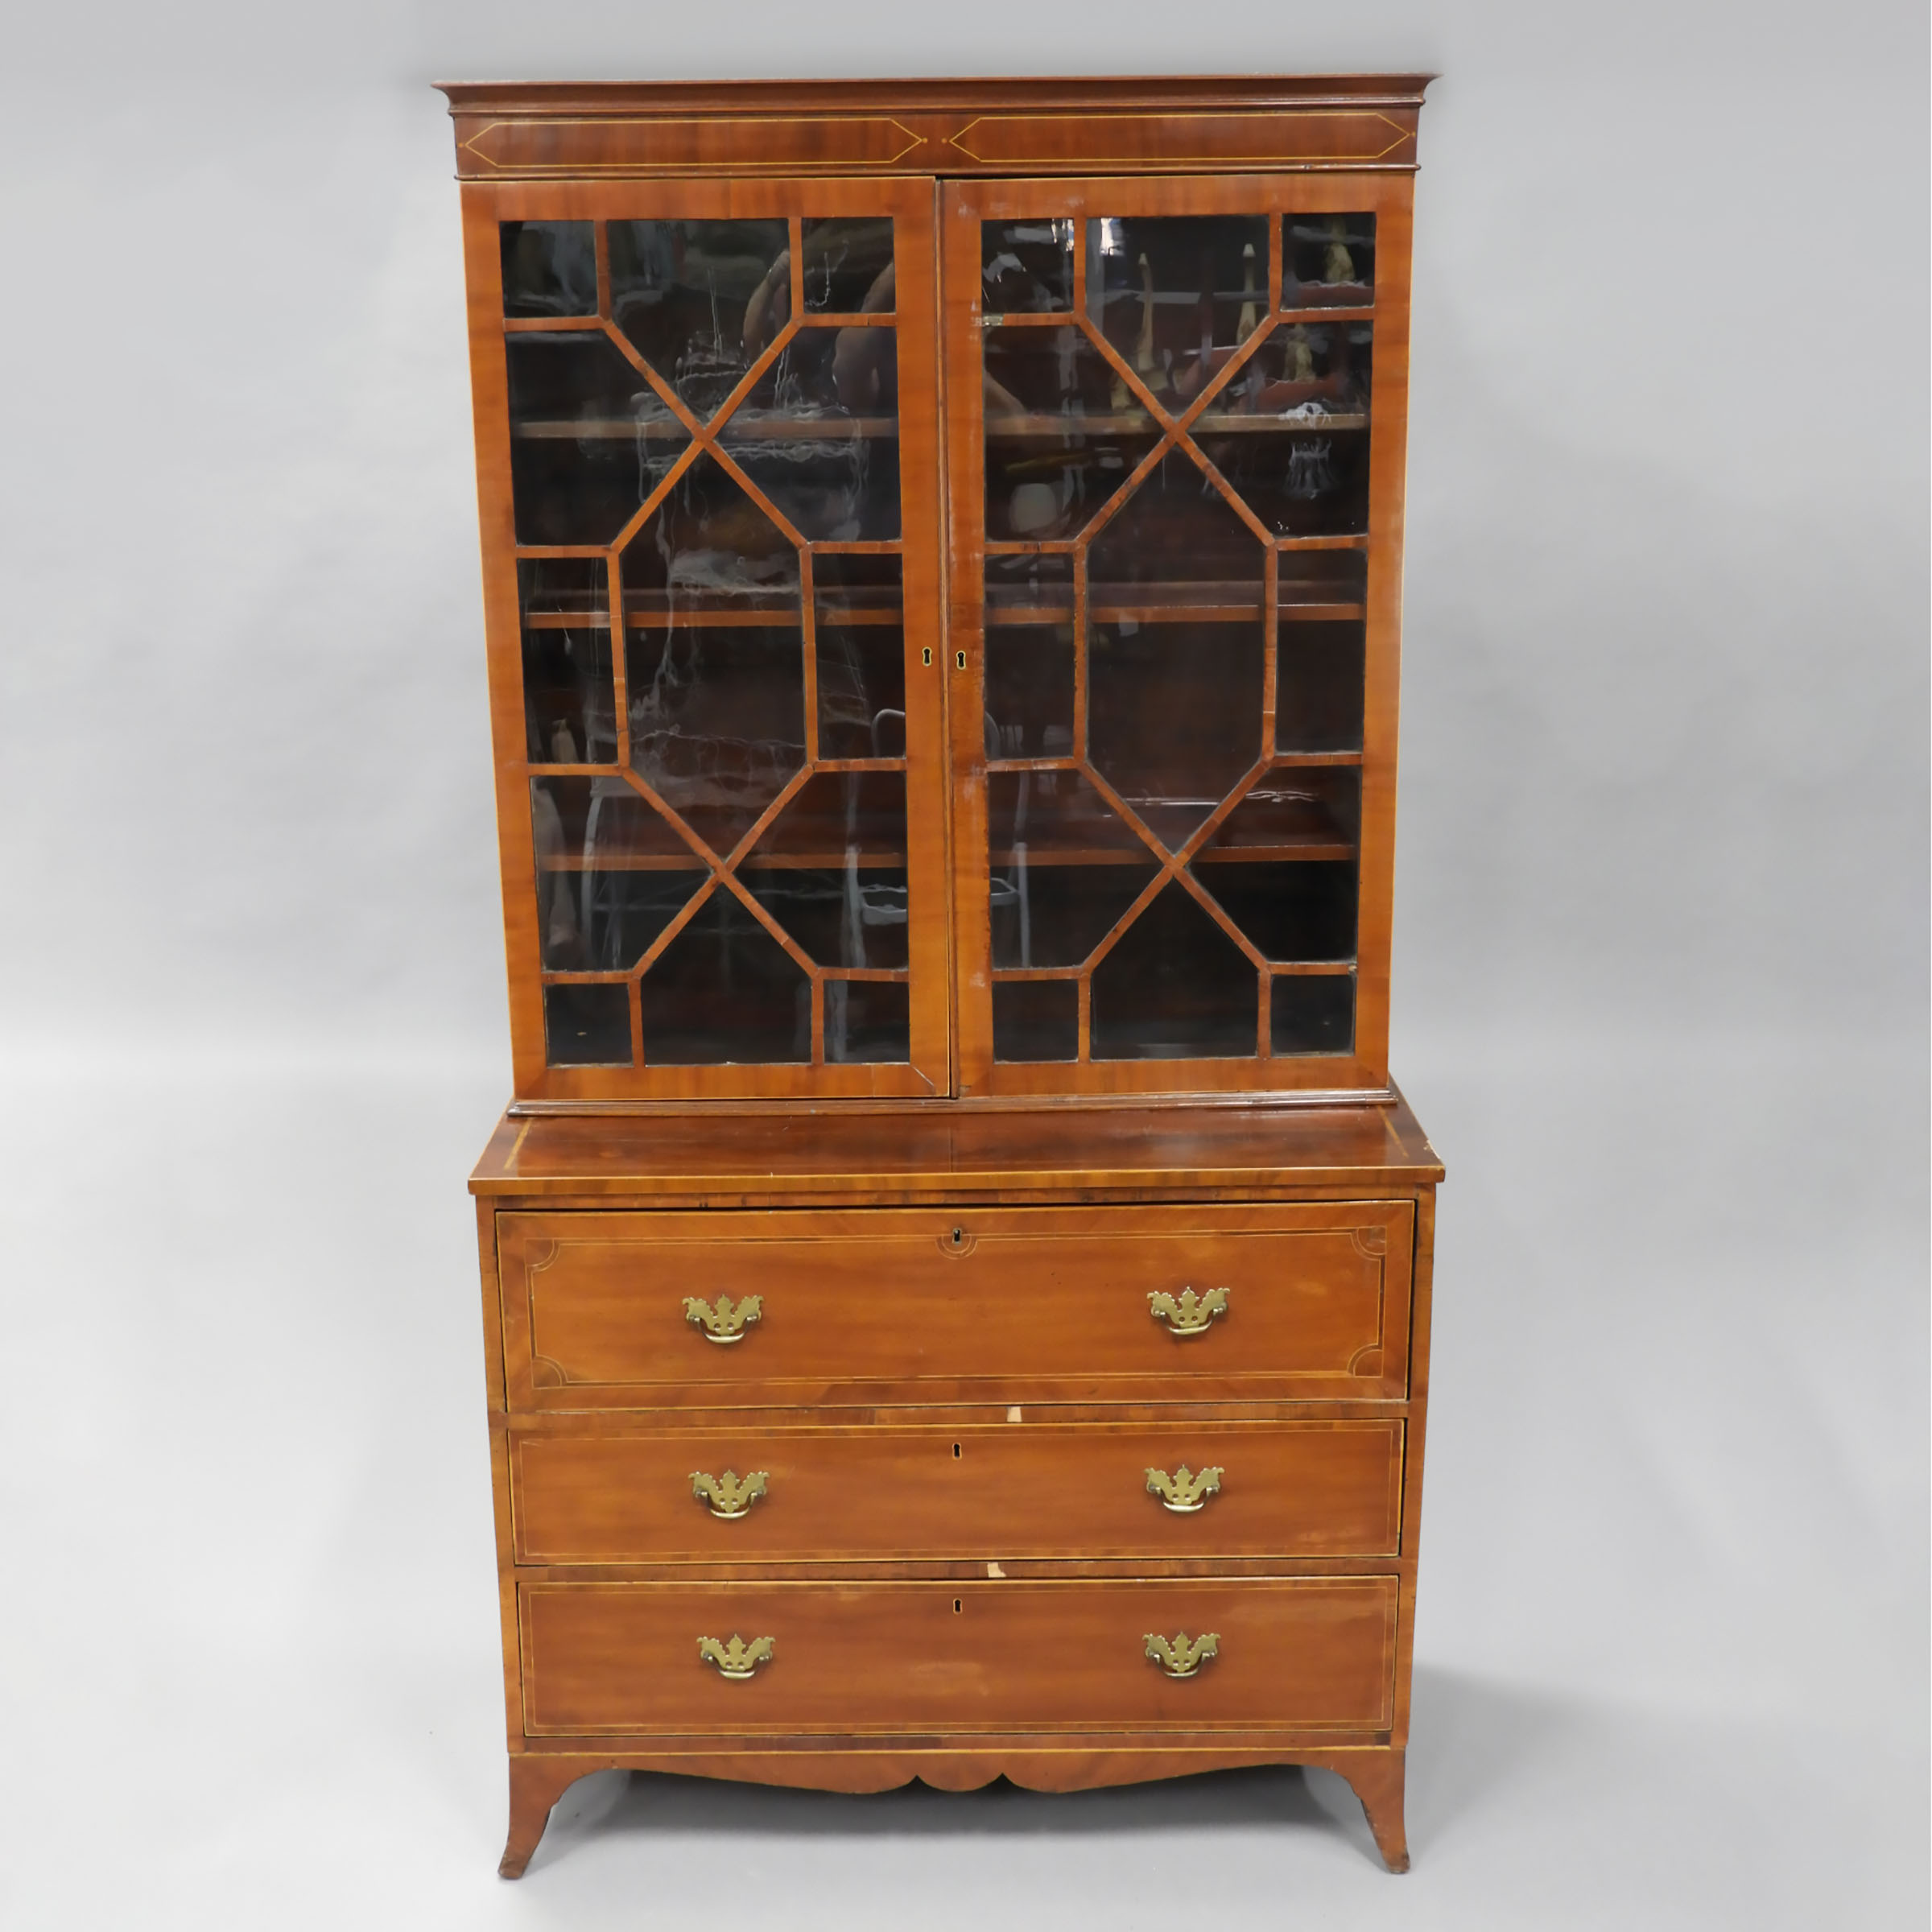 Regency Mahogany Secretaire Bookcase, early 19th century